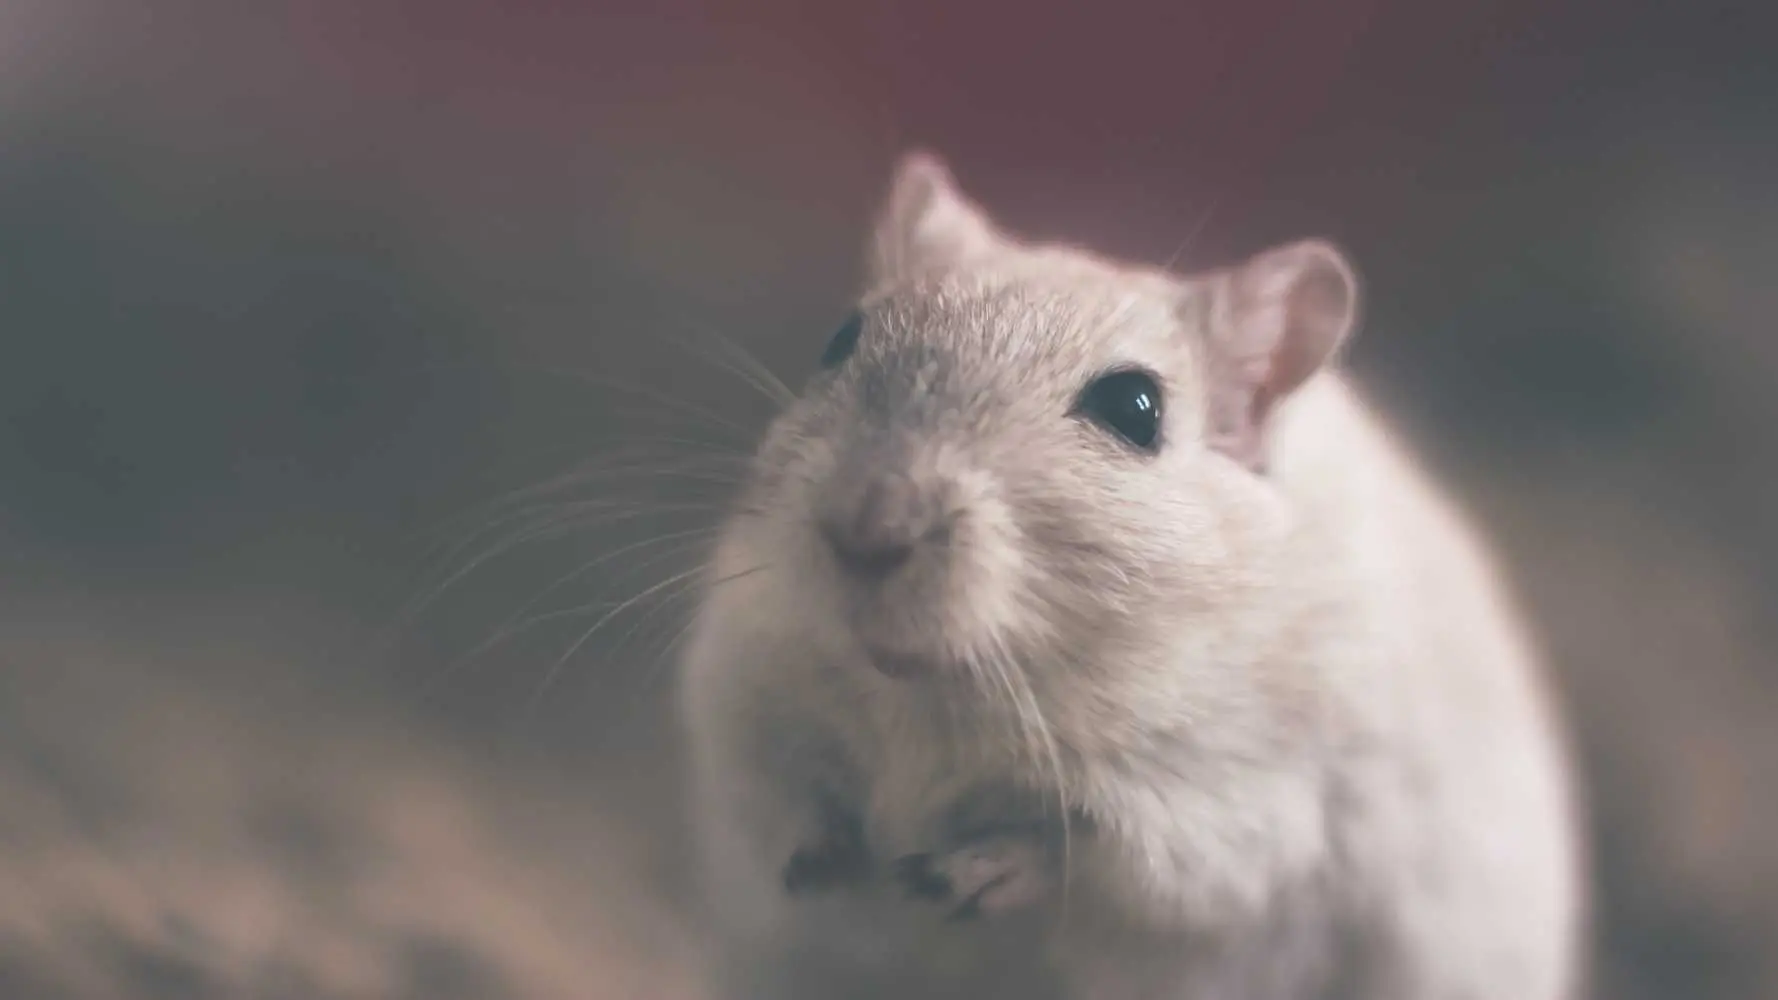 miedo a los ratones psicologia - Cómo superar el miedo a los ratones